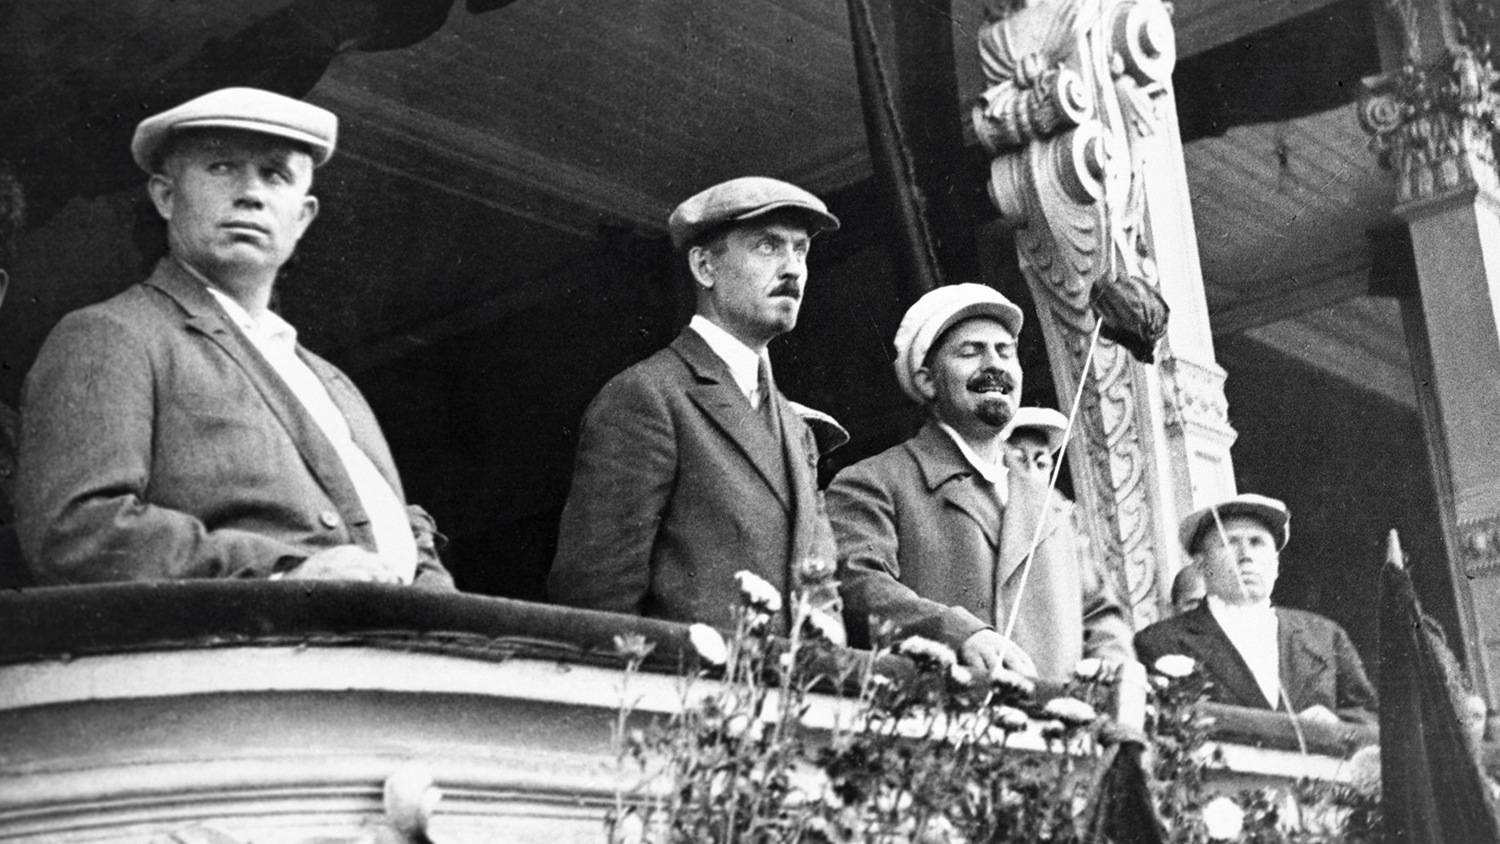 Никита Хрущев, Николай Булганин, Лазарь Каганович на балконе здания во время парада московской... 